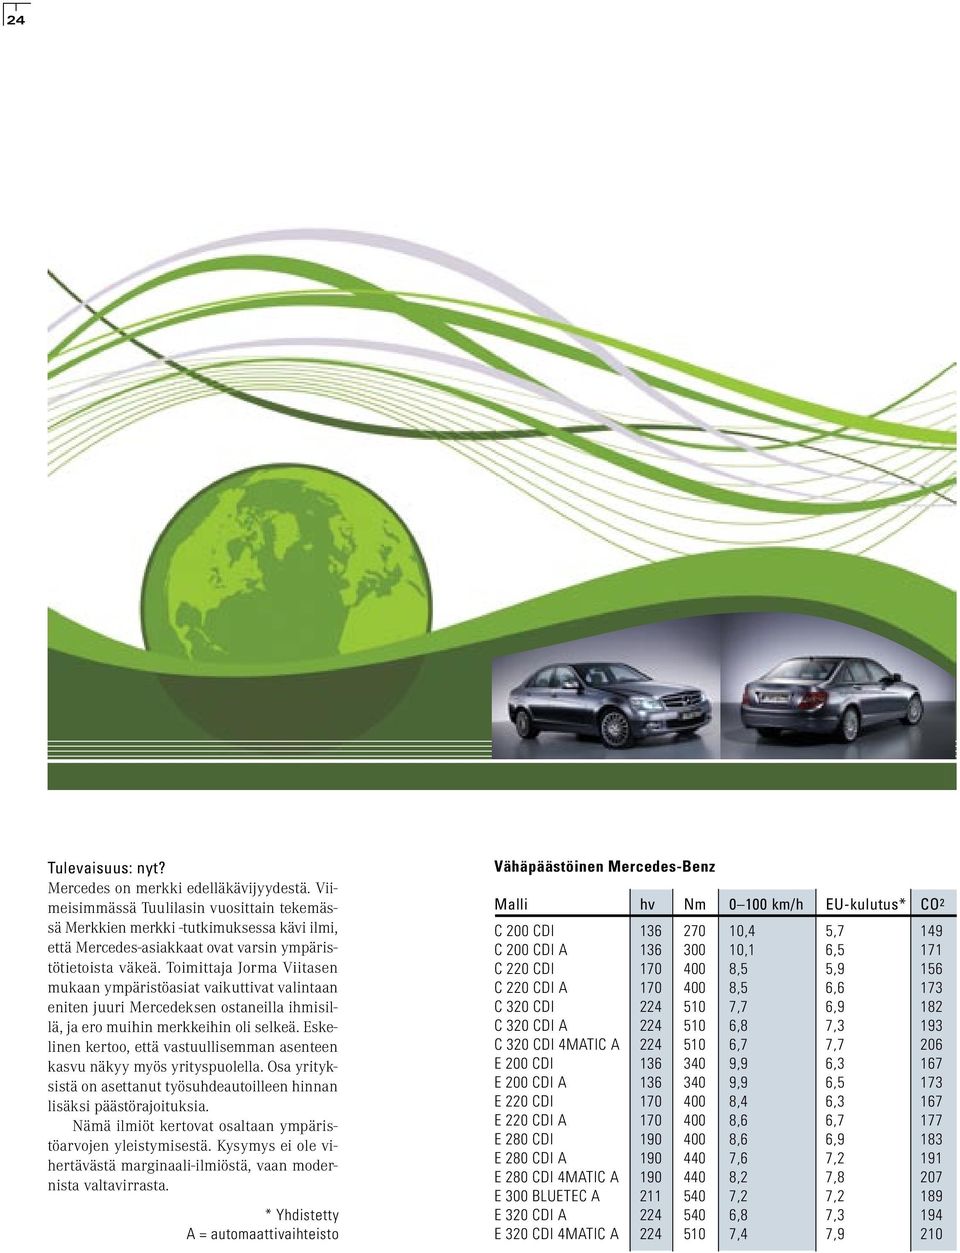 Toimittaja Jorma Viitasen mukaan ympäristöasiat vaikuttivat valintaan eniten juuri Mercedeksen ostaneilla ihmisillä, ja ero muihin merkkeihin oli selkeä.